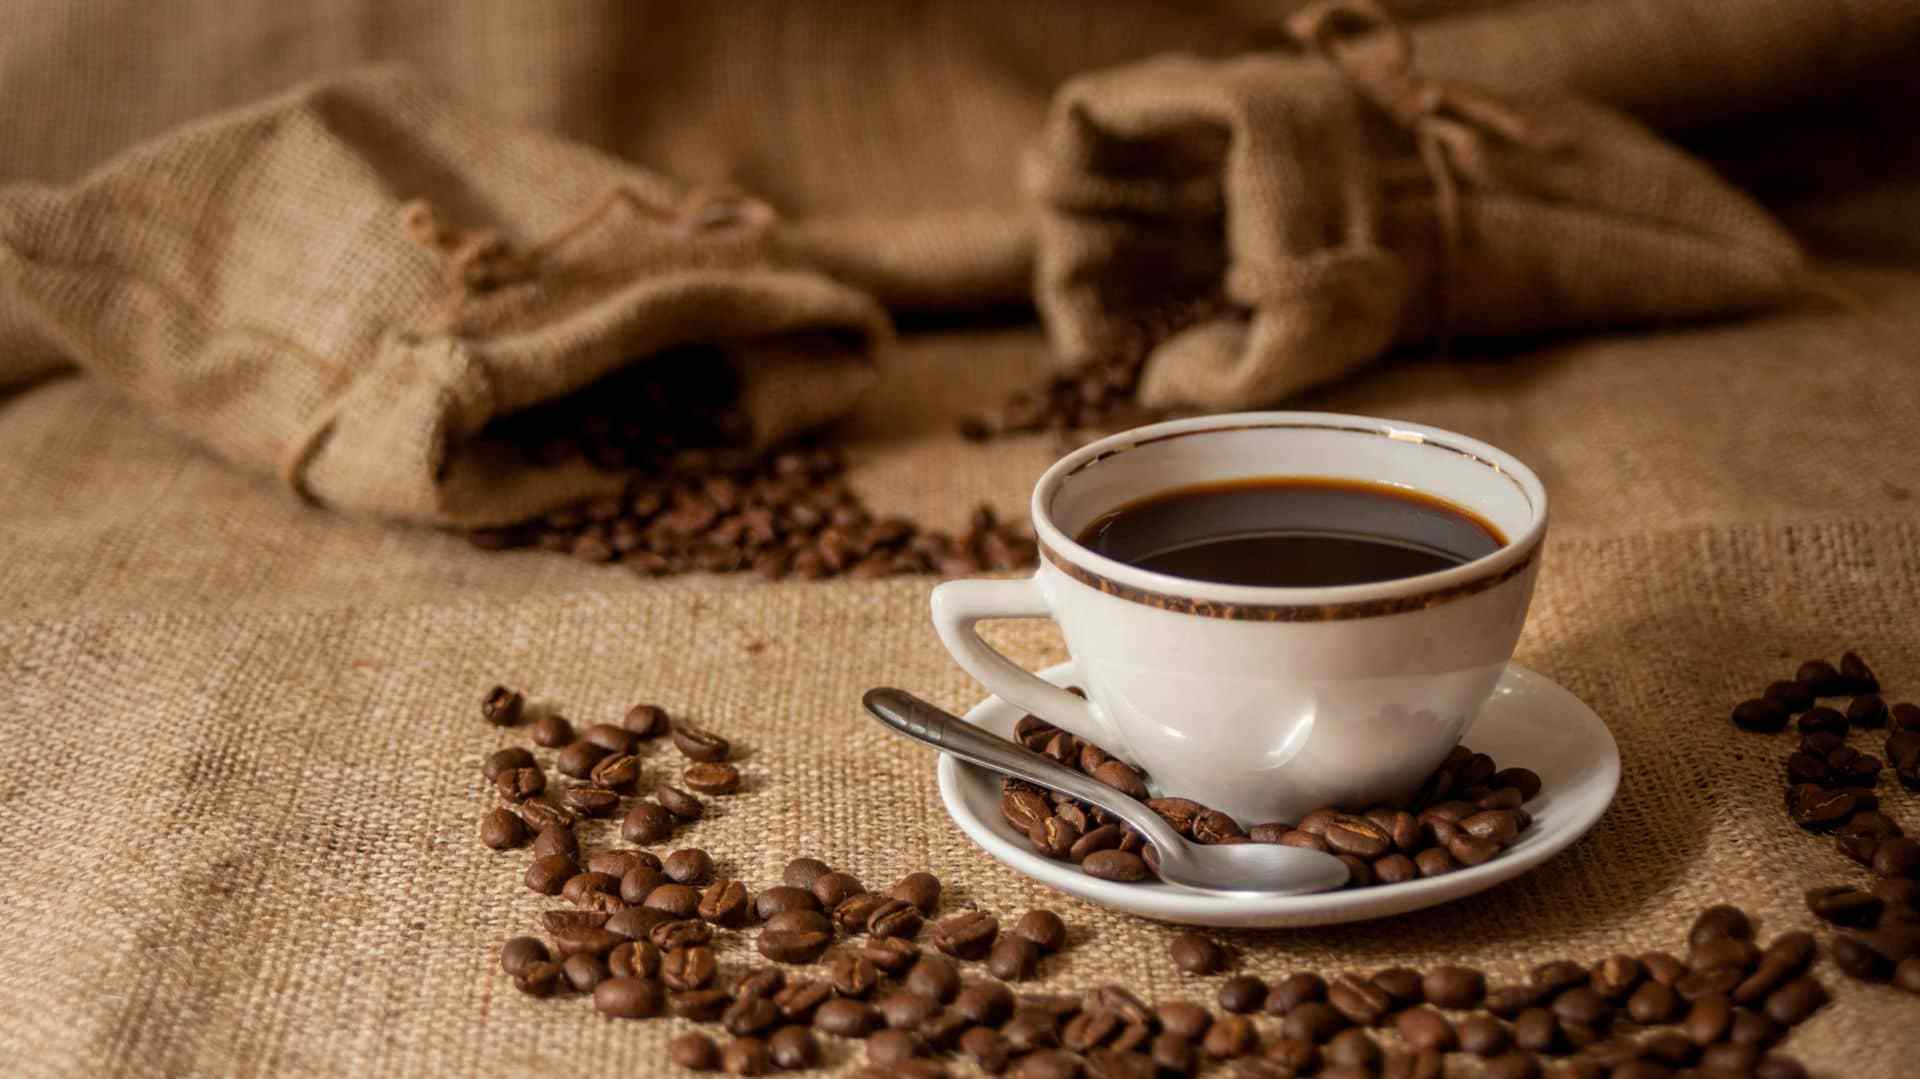 proveedores de café en México para iniciar tu negocioproveedores de café en México para iniciar tu negocio